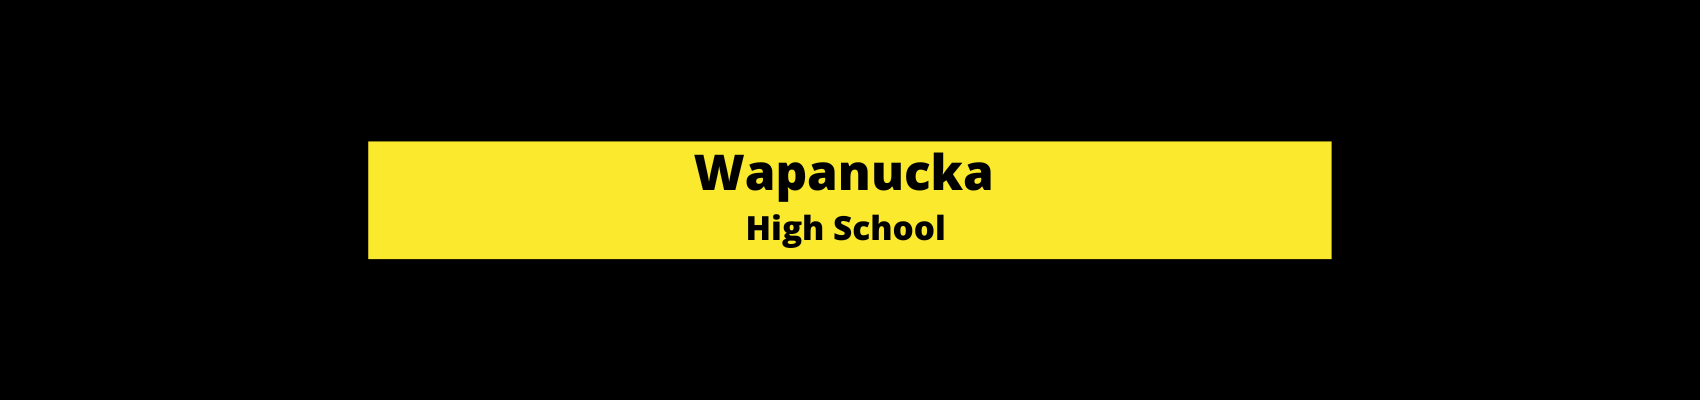 Wapanucka High school